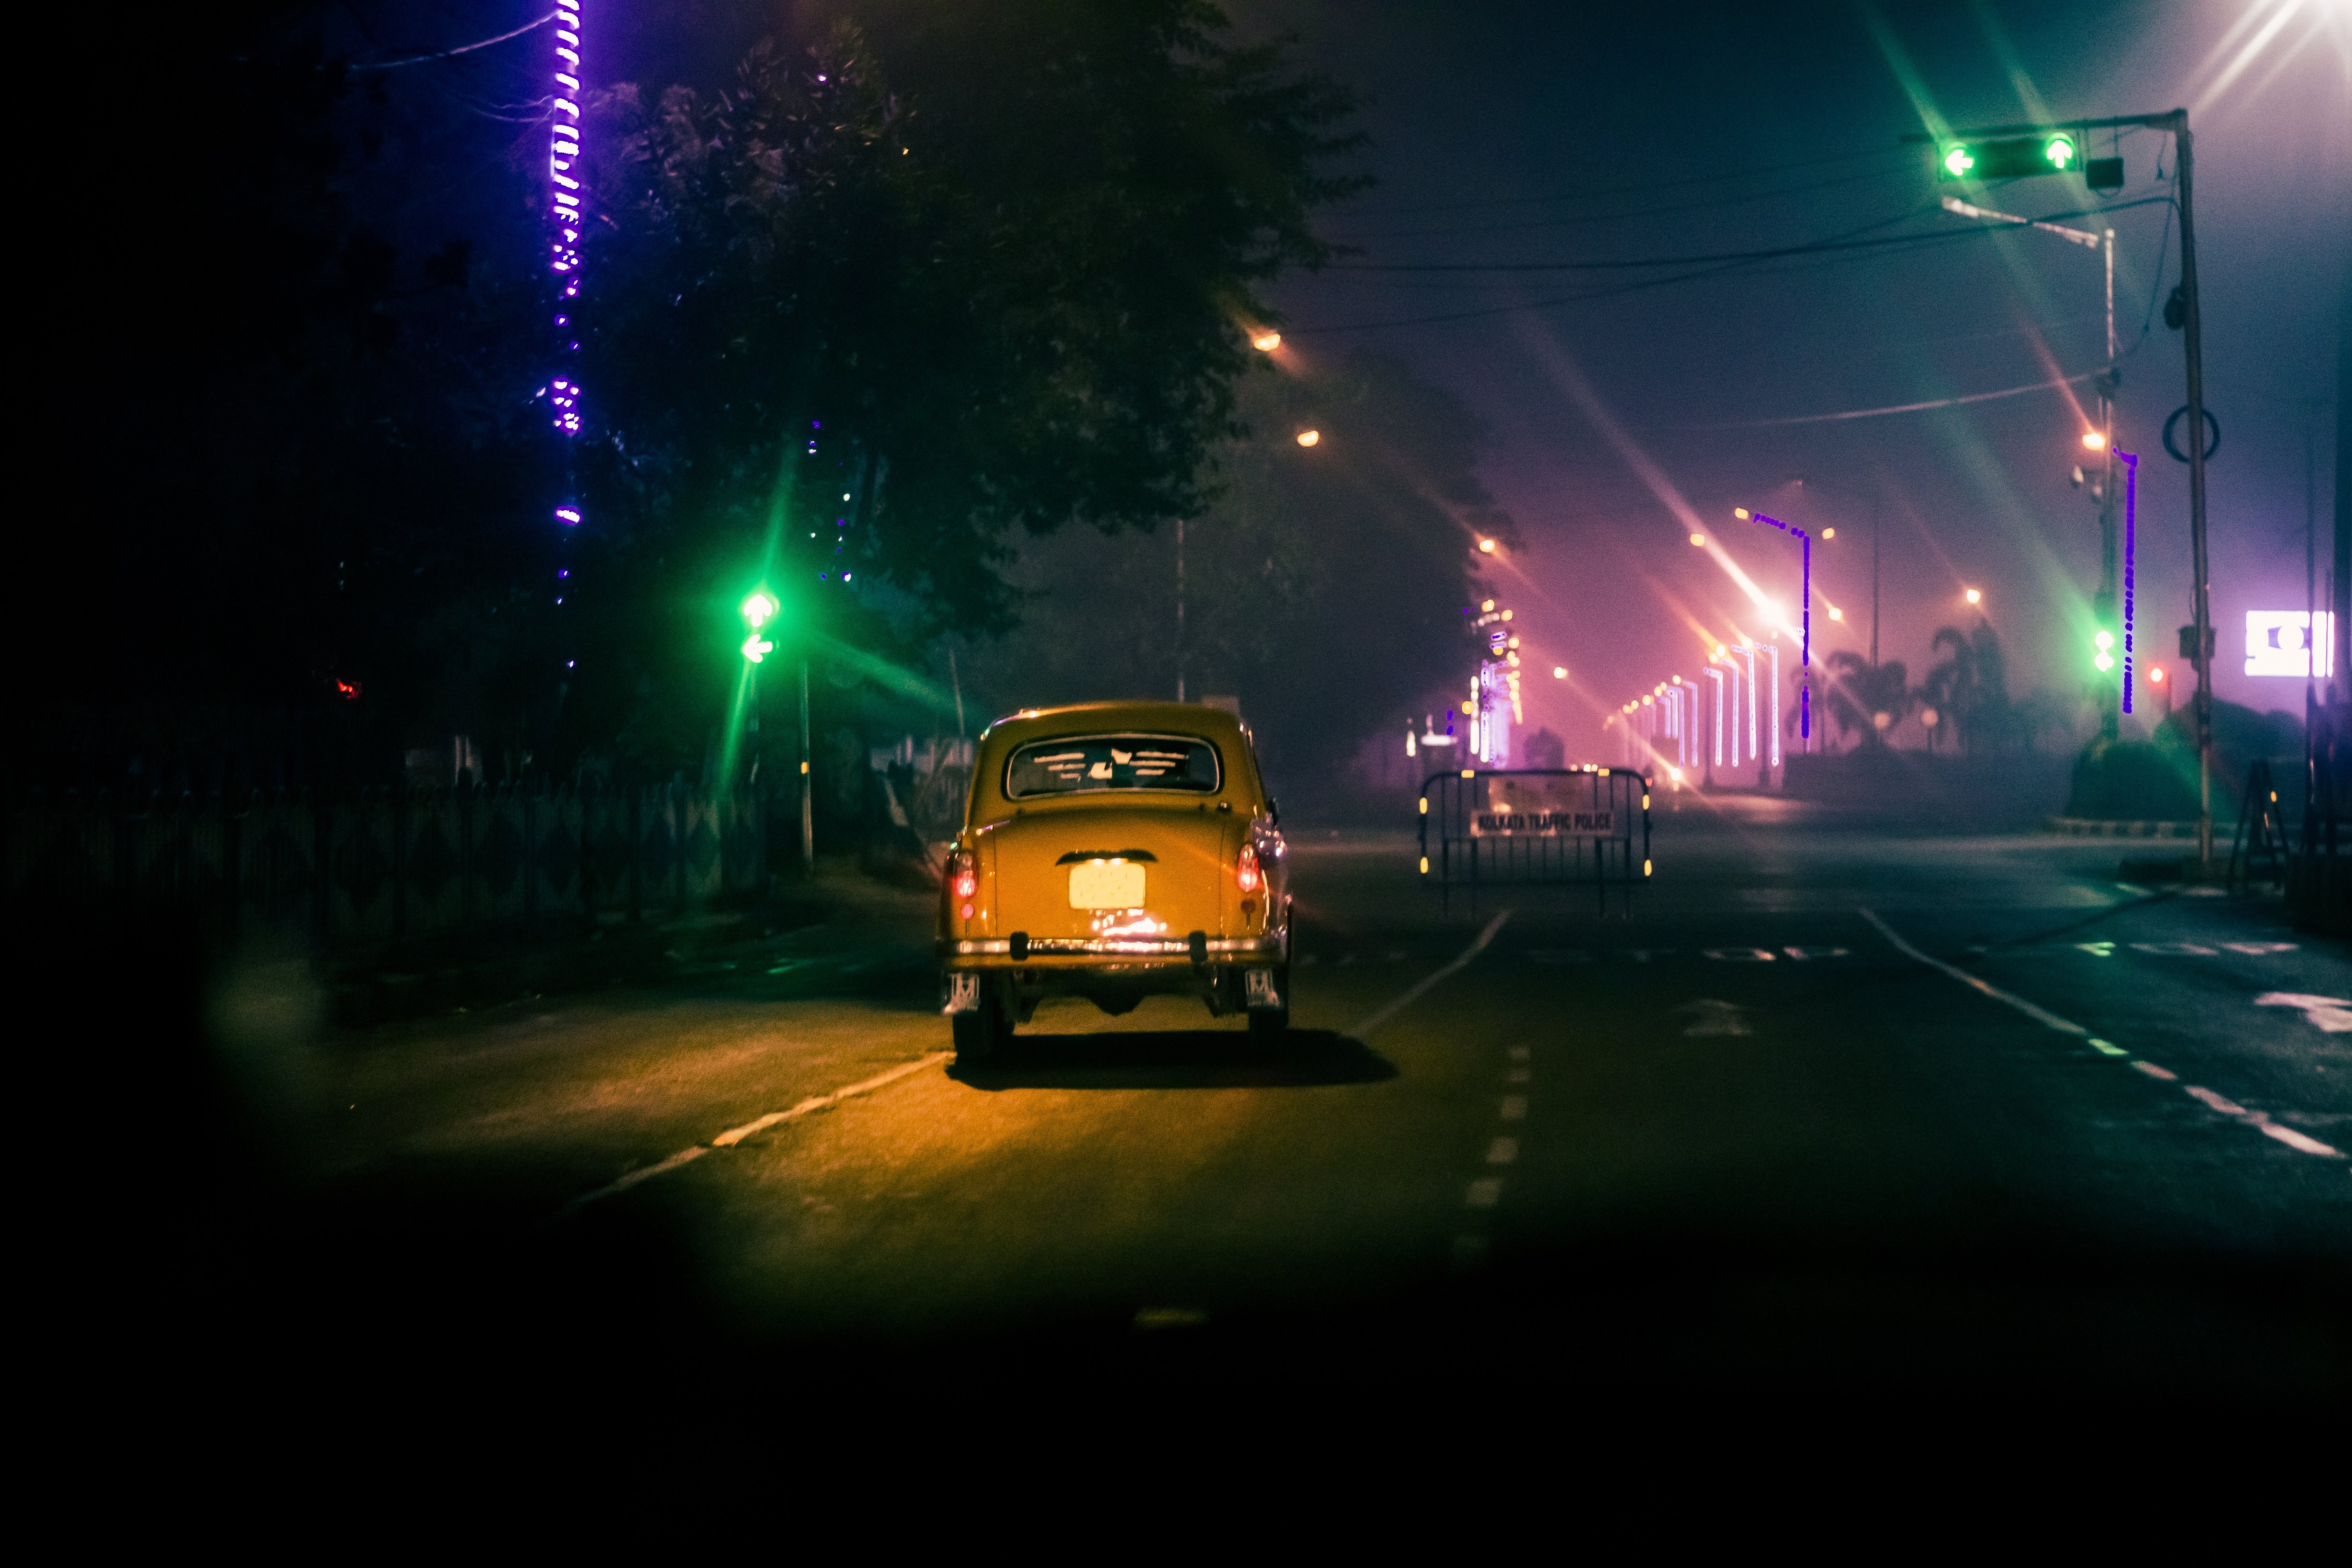 Un taxi descend la rue vide la nuit Photo 